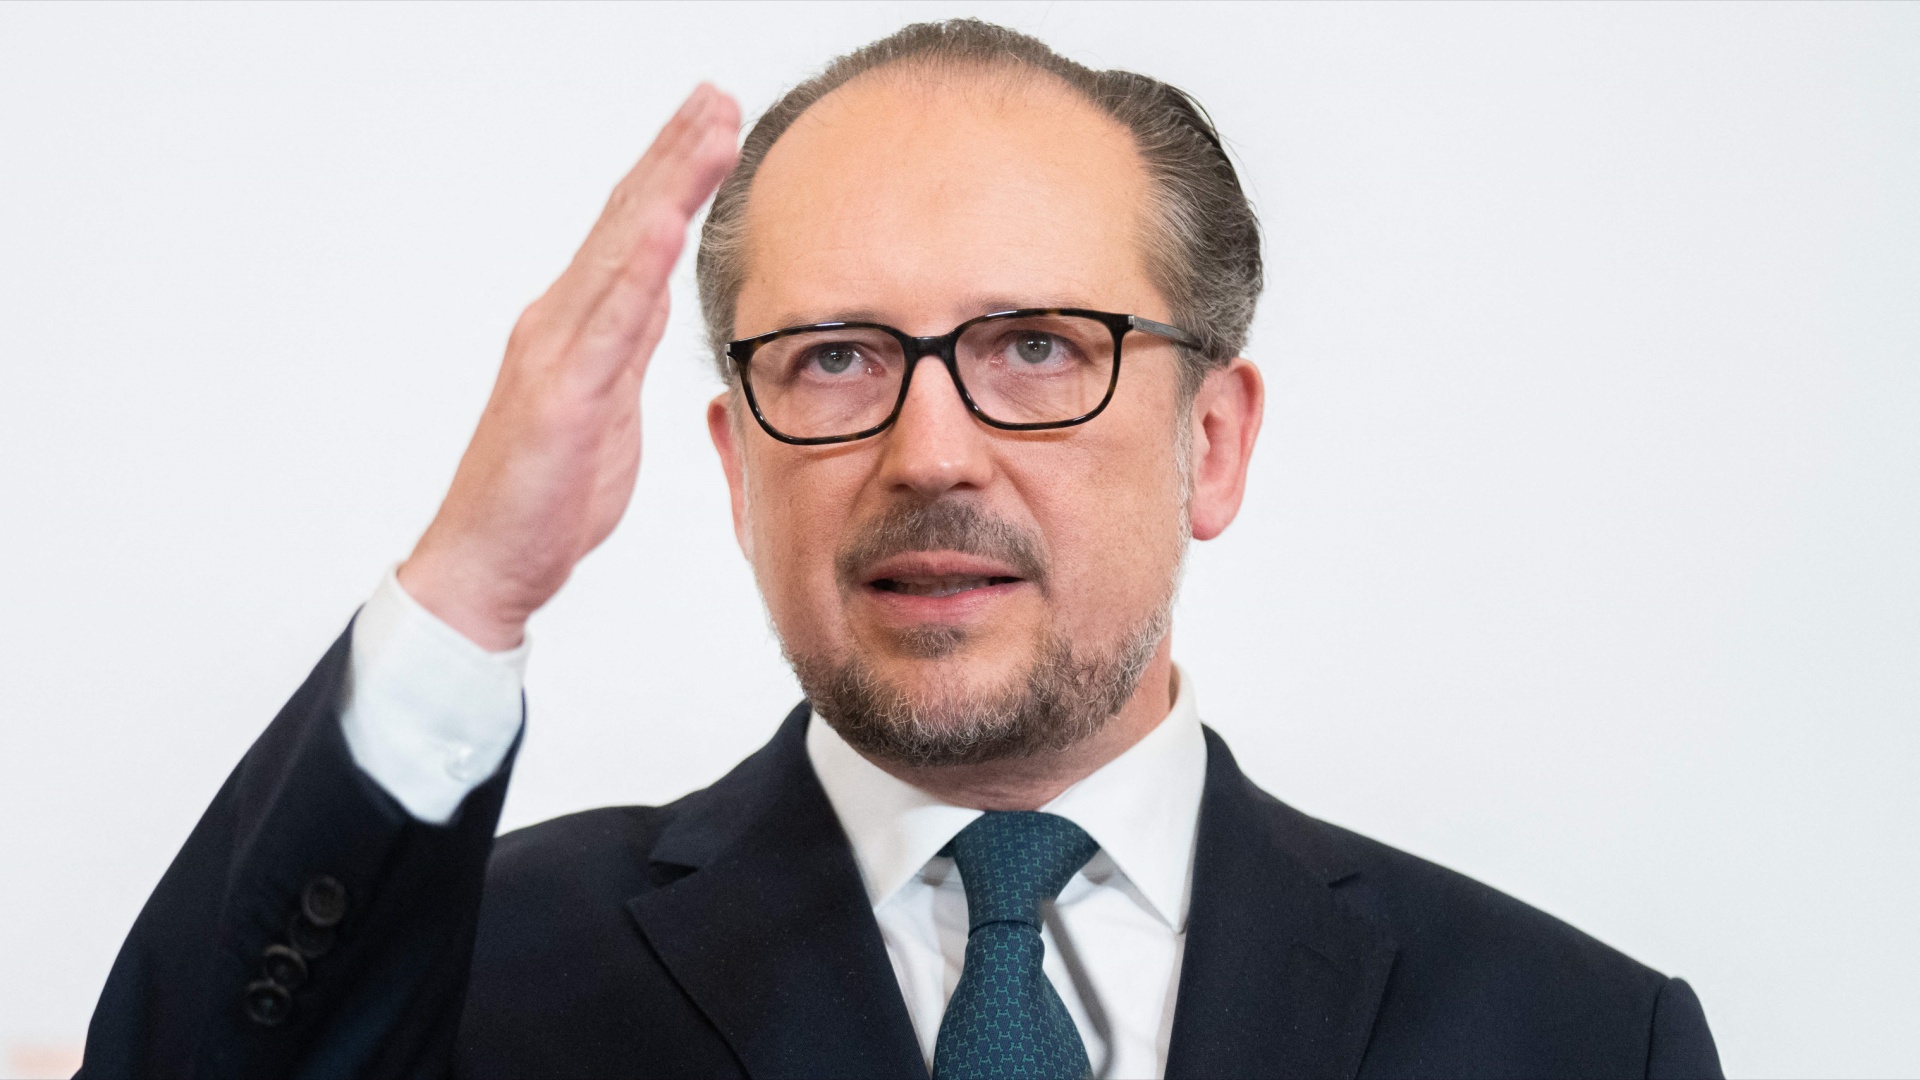 Второй за несколько месяцев канцлер Австрии готов покинуть свой пост